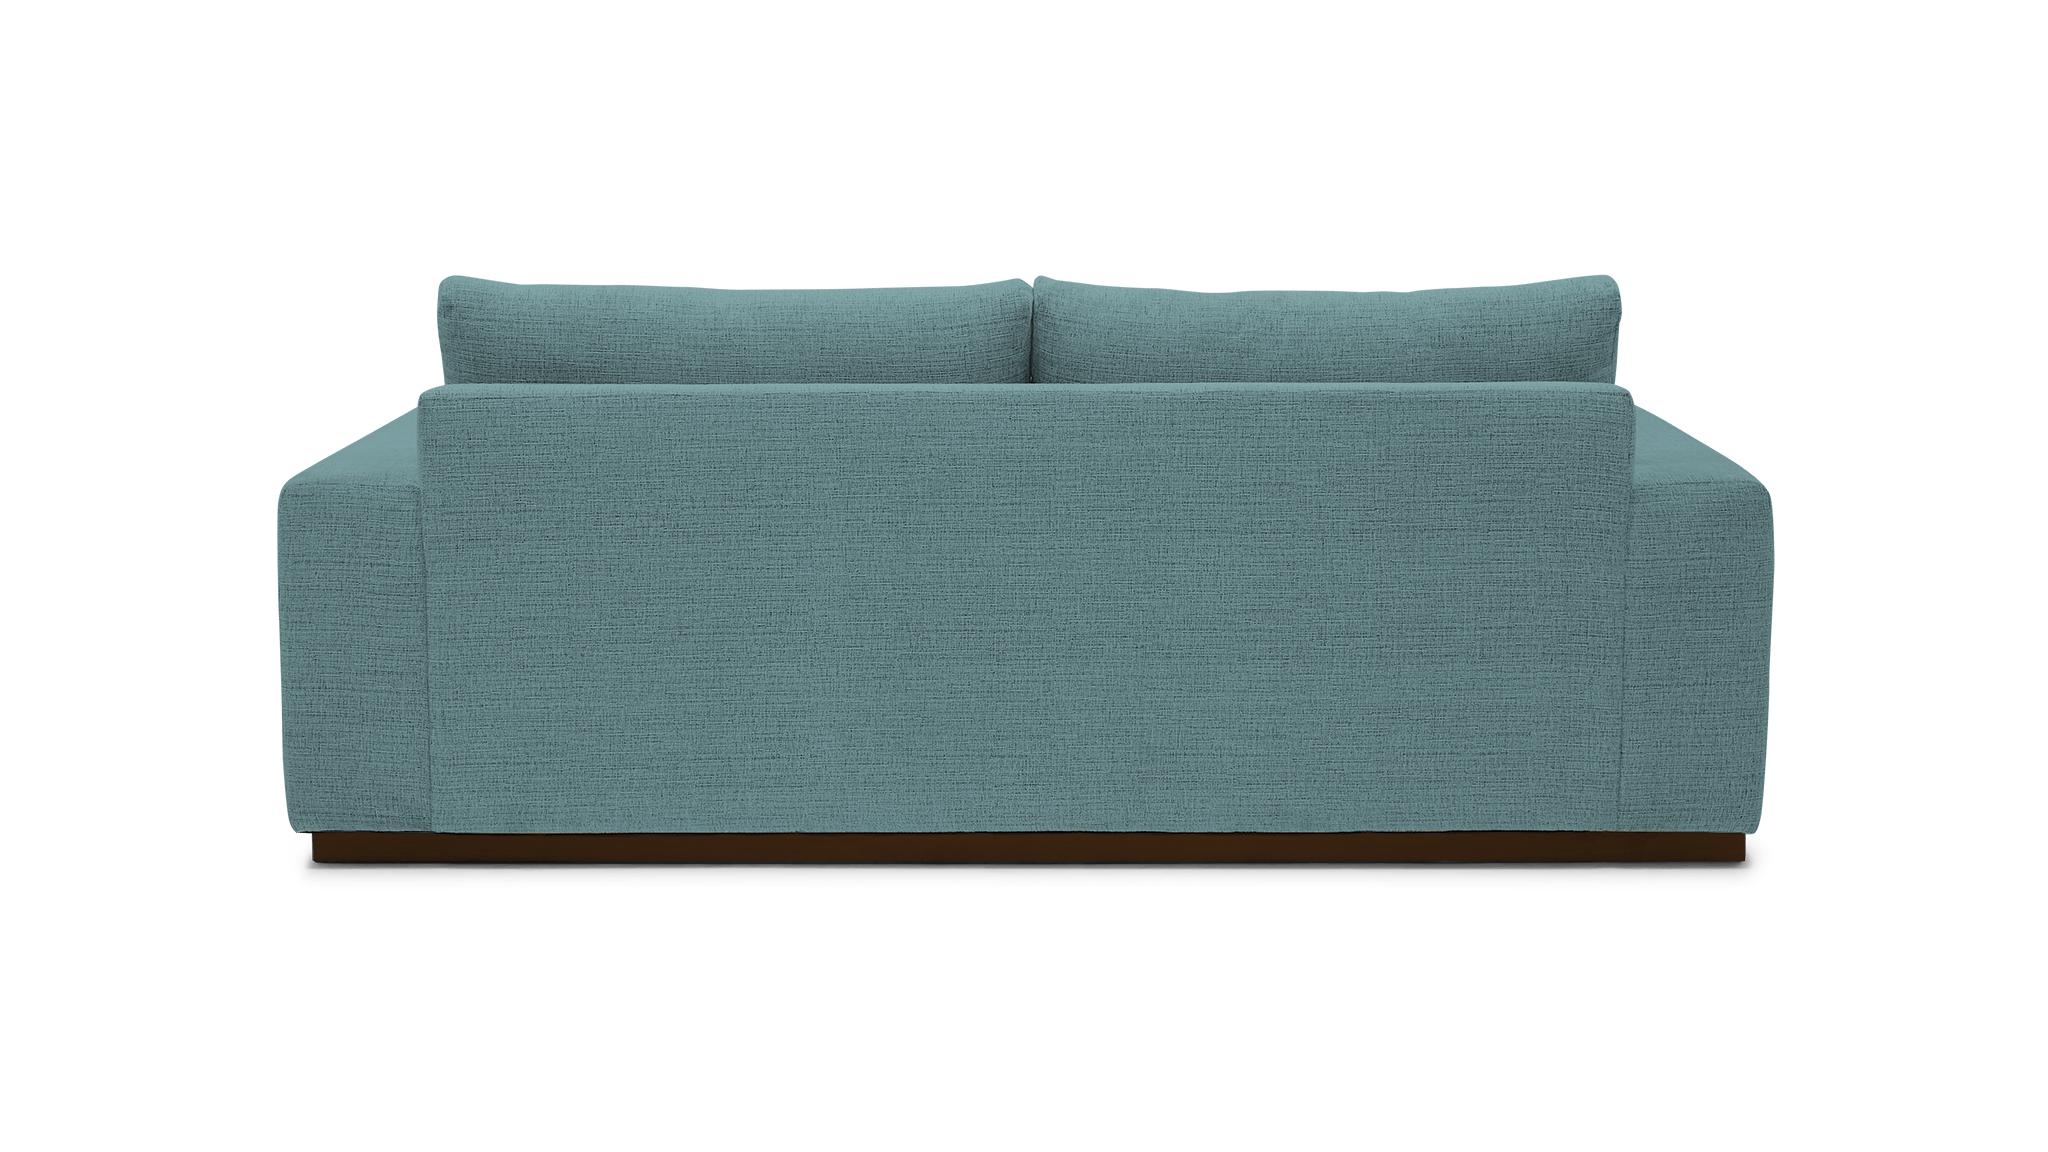 Blue Holt Mid Century Modern Sofa - Dawson Slate - Mocha - Image 4